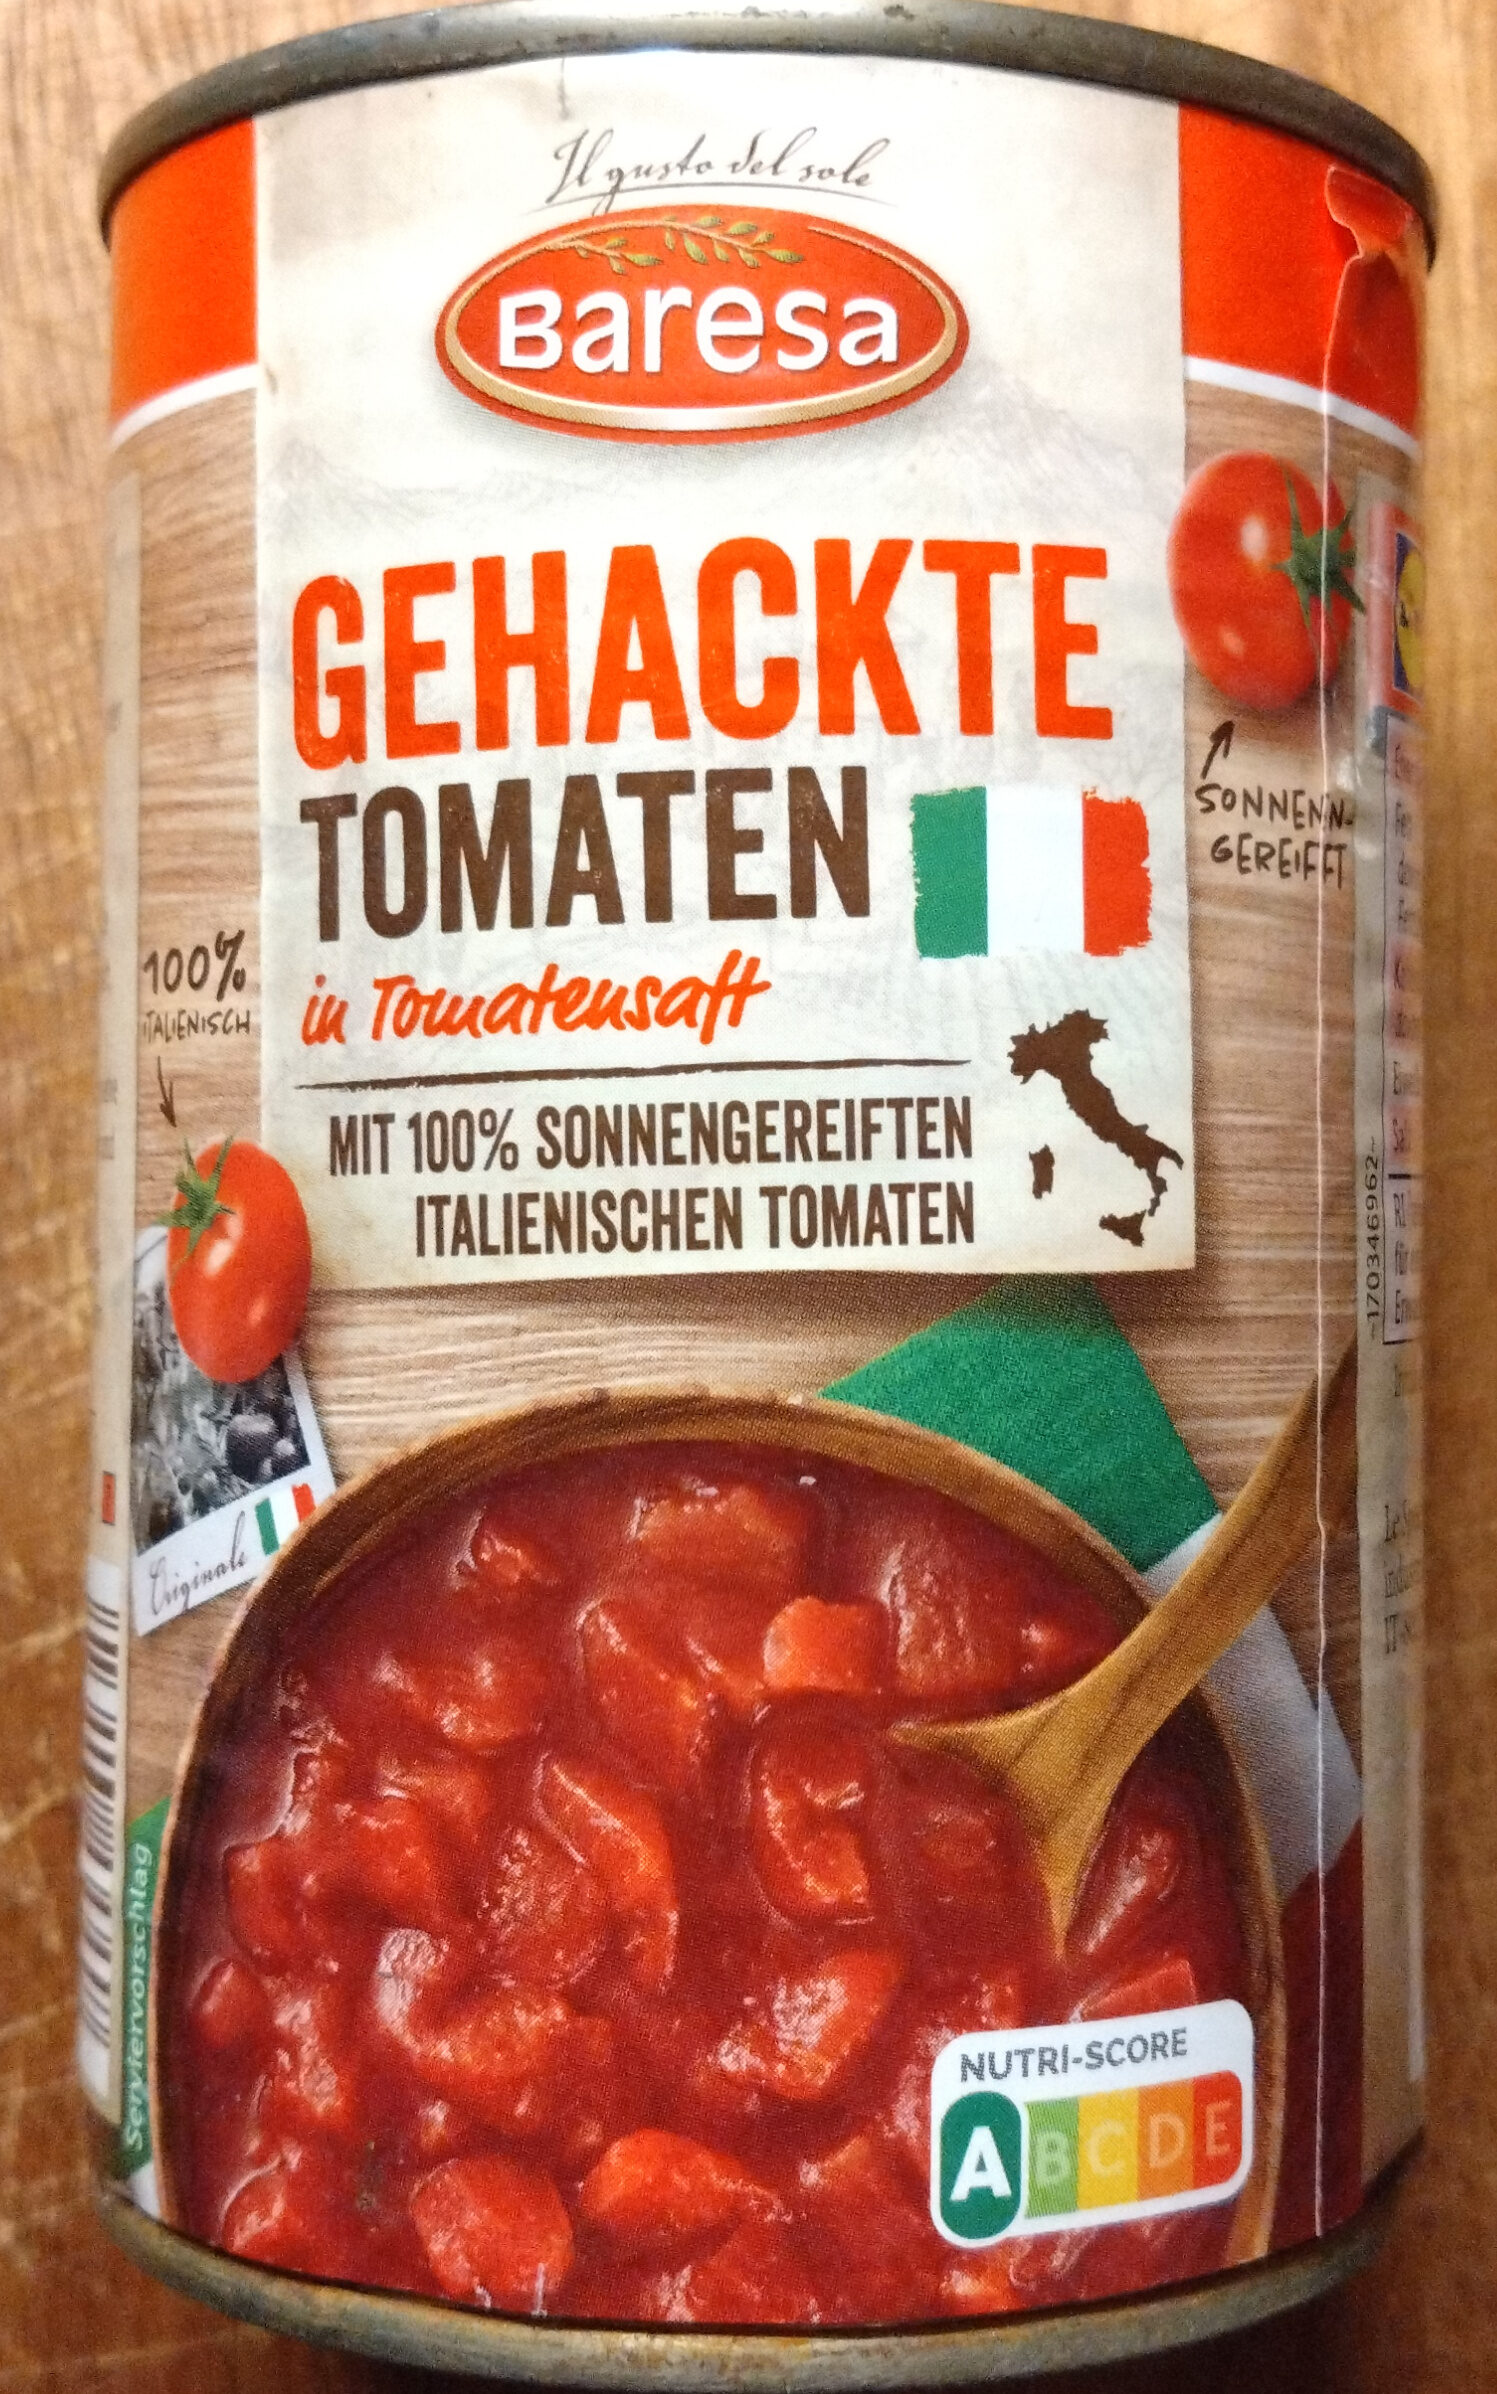 Gehackte Tomaten - Product - de